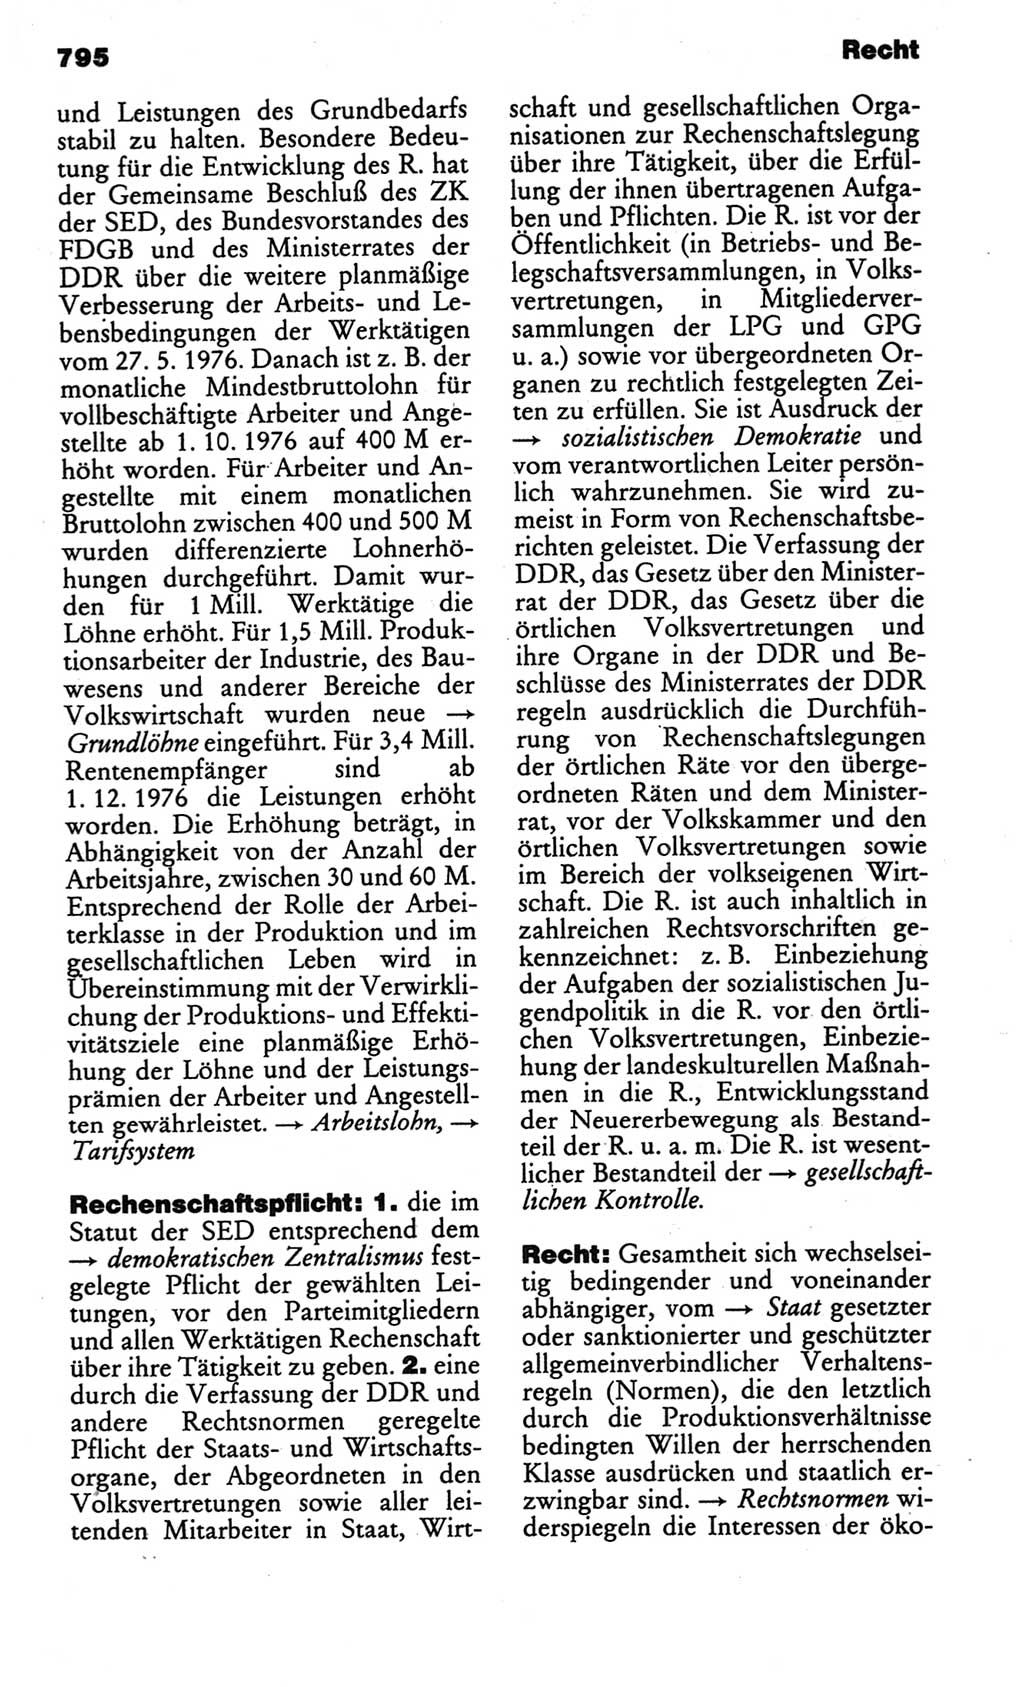 Kleines politisches Wörterbuch [Deutsche Demokratische Republik (DDR)] 1986, Seite 795 (Kl. pol. Wb. DDR 1986, S. 795)